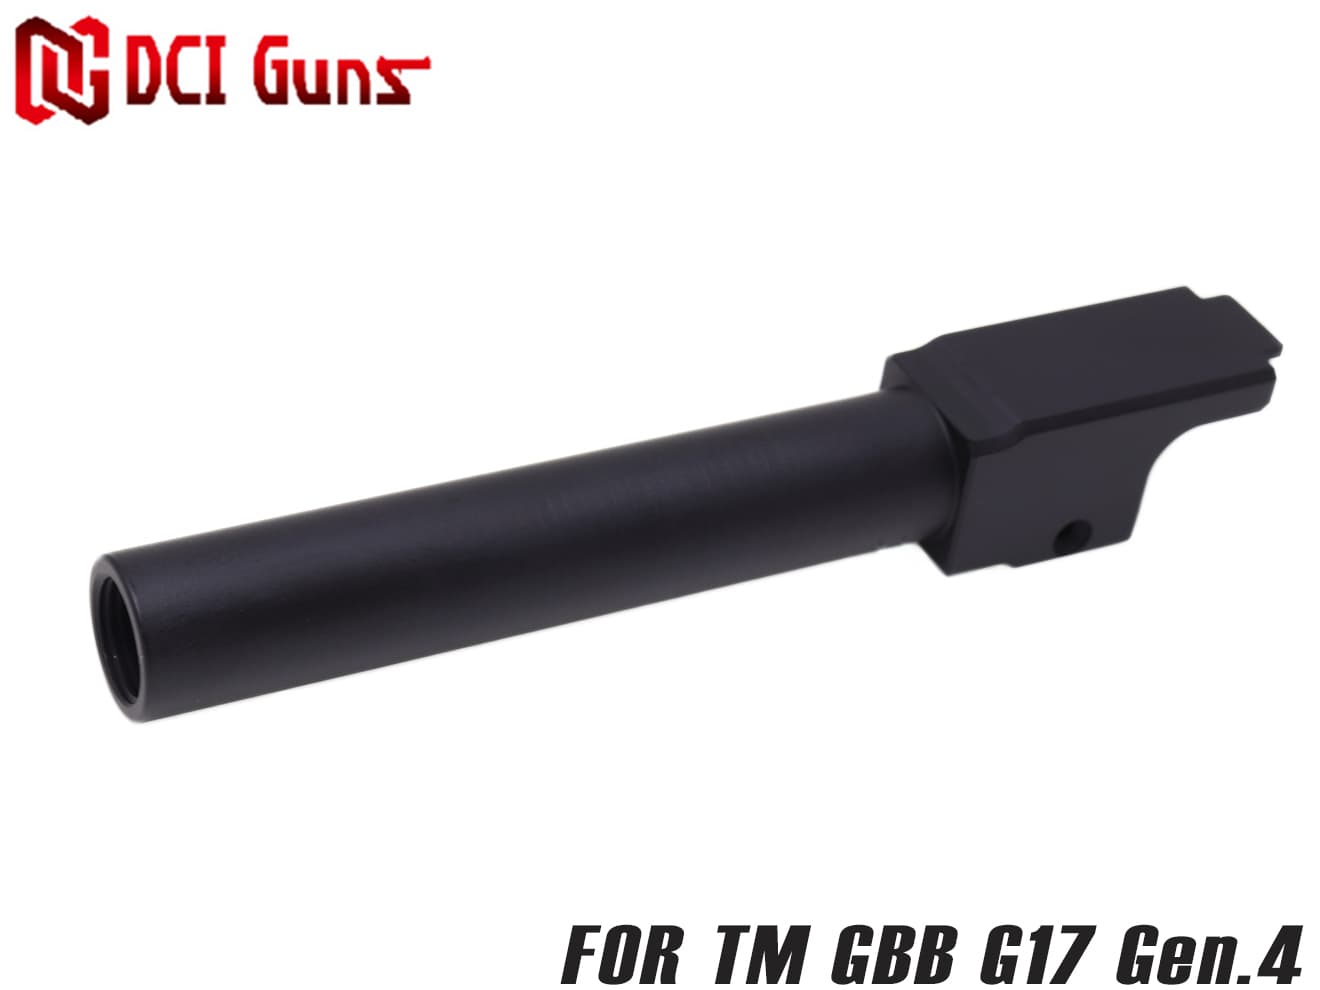 【訳あり】DCI Guns 東京マルイG19用　アウターバレル　ブラック(塗装)